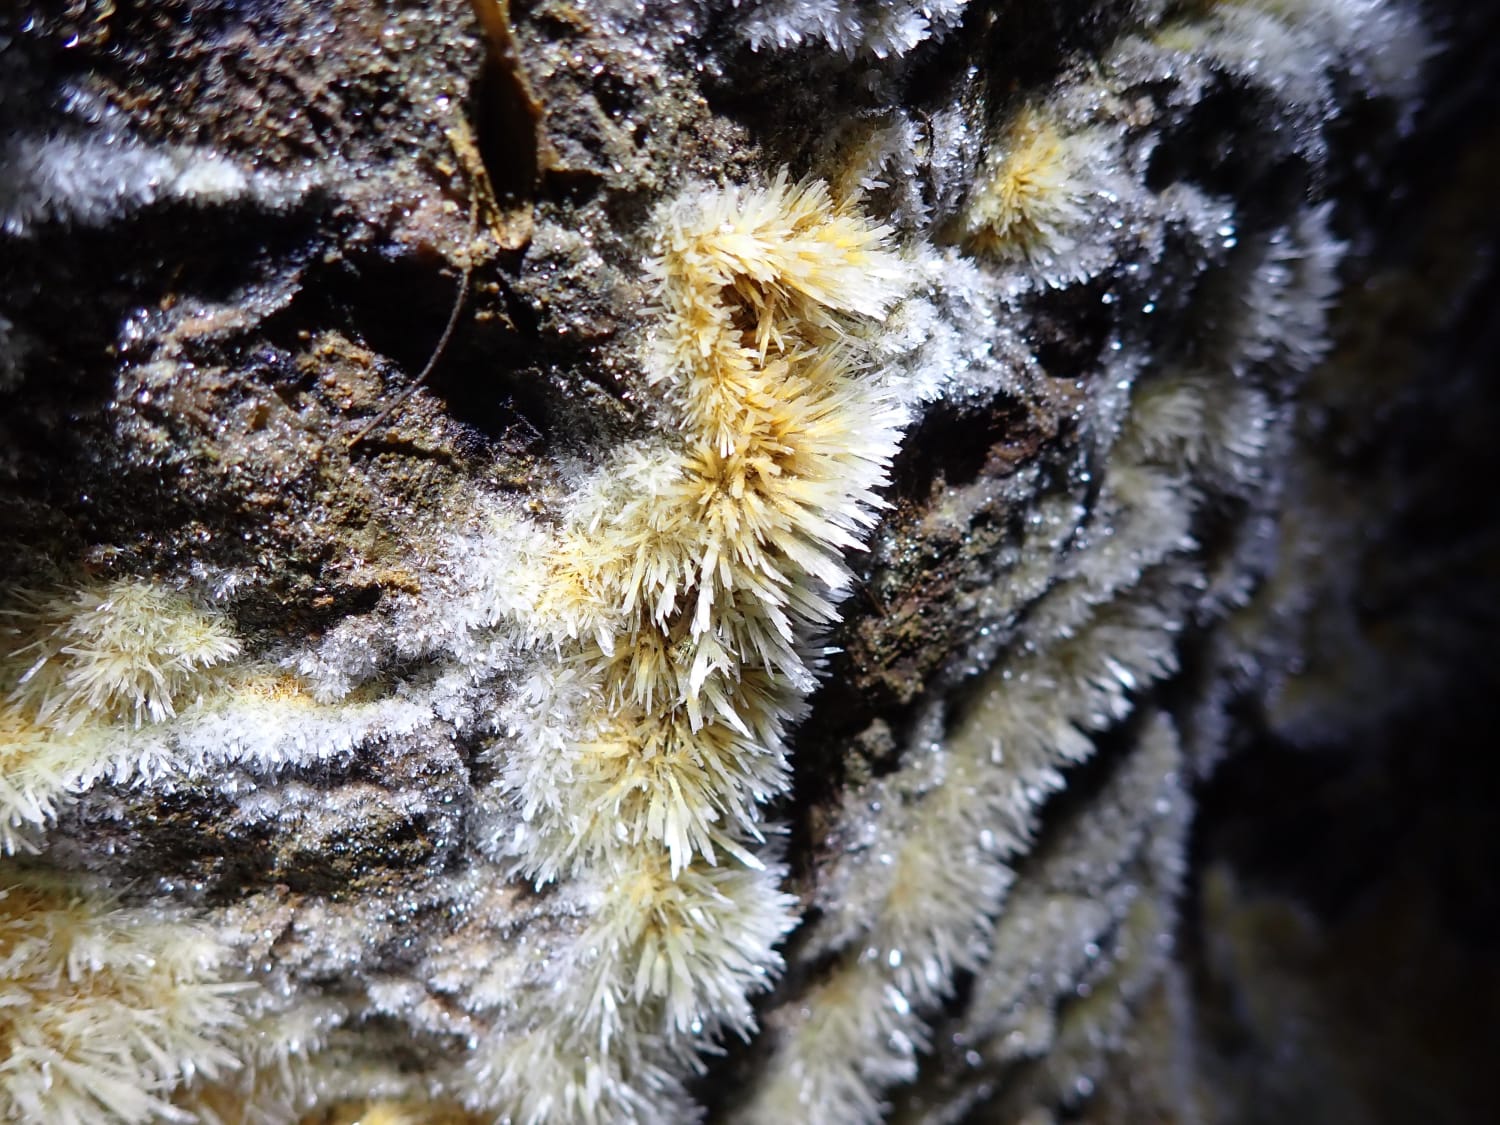 Gypsum crystals found in-situ underground in Ma On Shan iron mine, Hong Kong